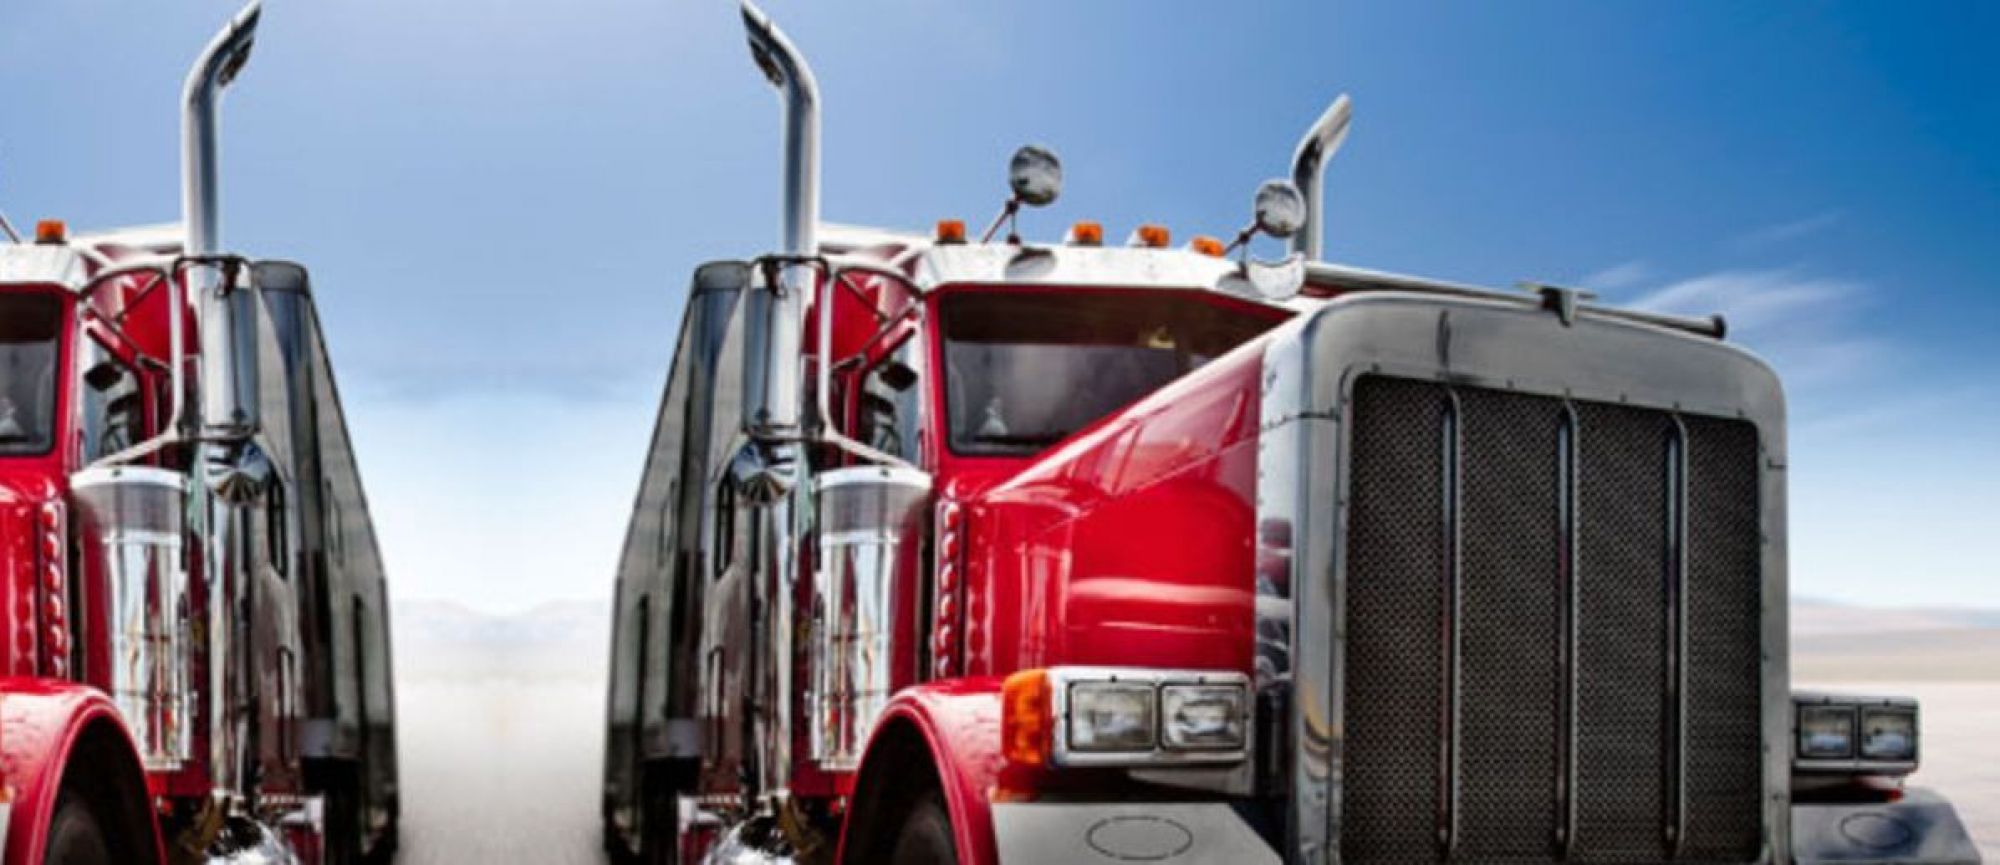 (713) 893-8047, (713) 377-2005 - Houston (Texas) Commercial Truck Insurance